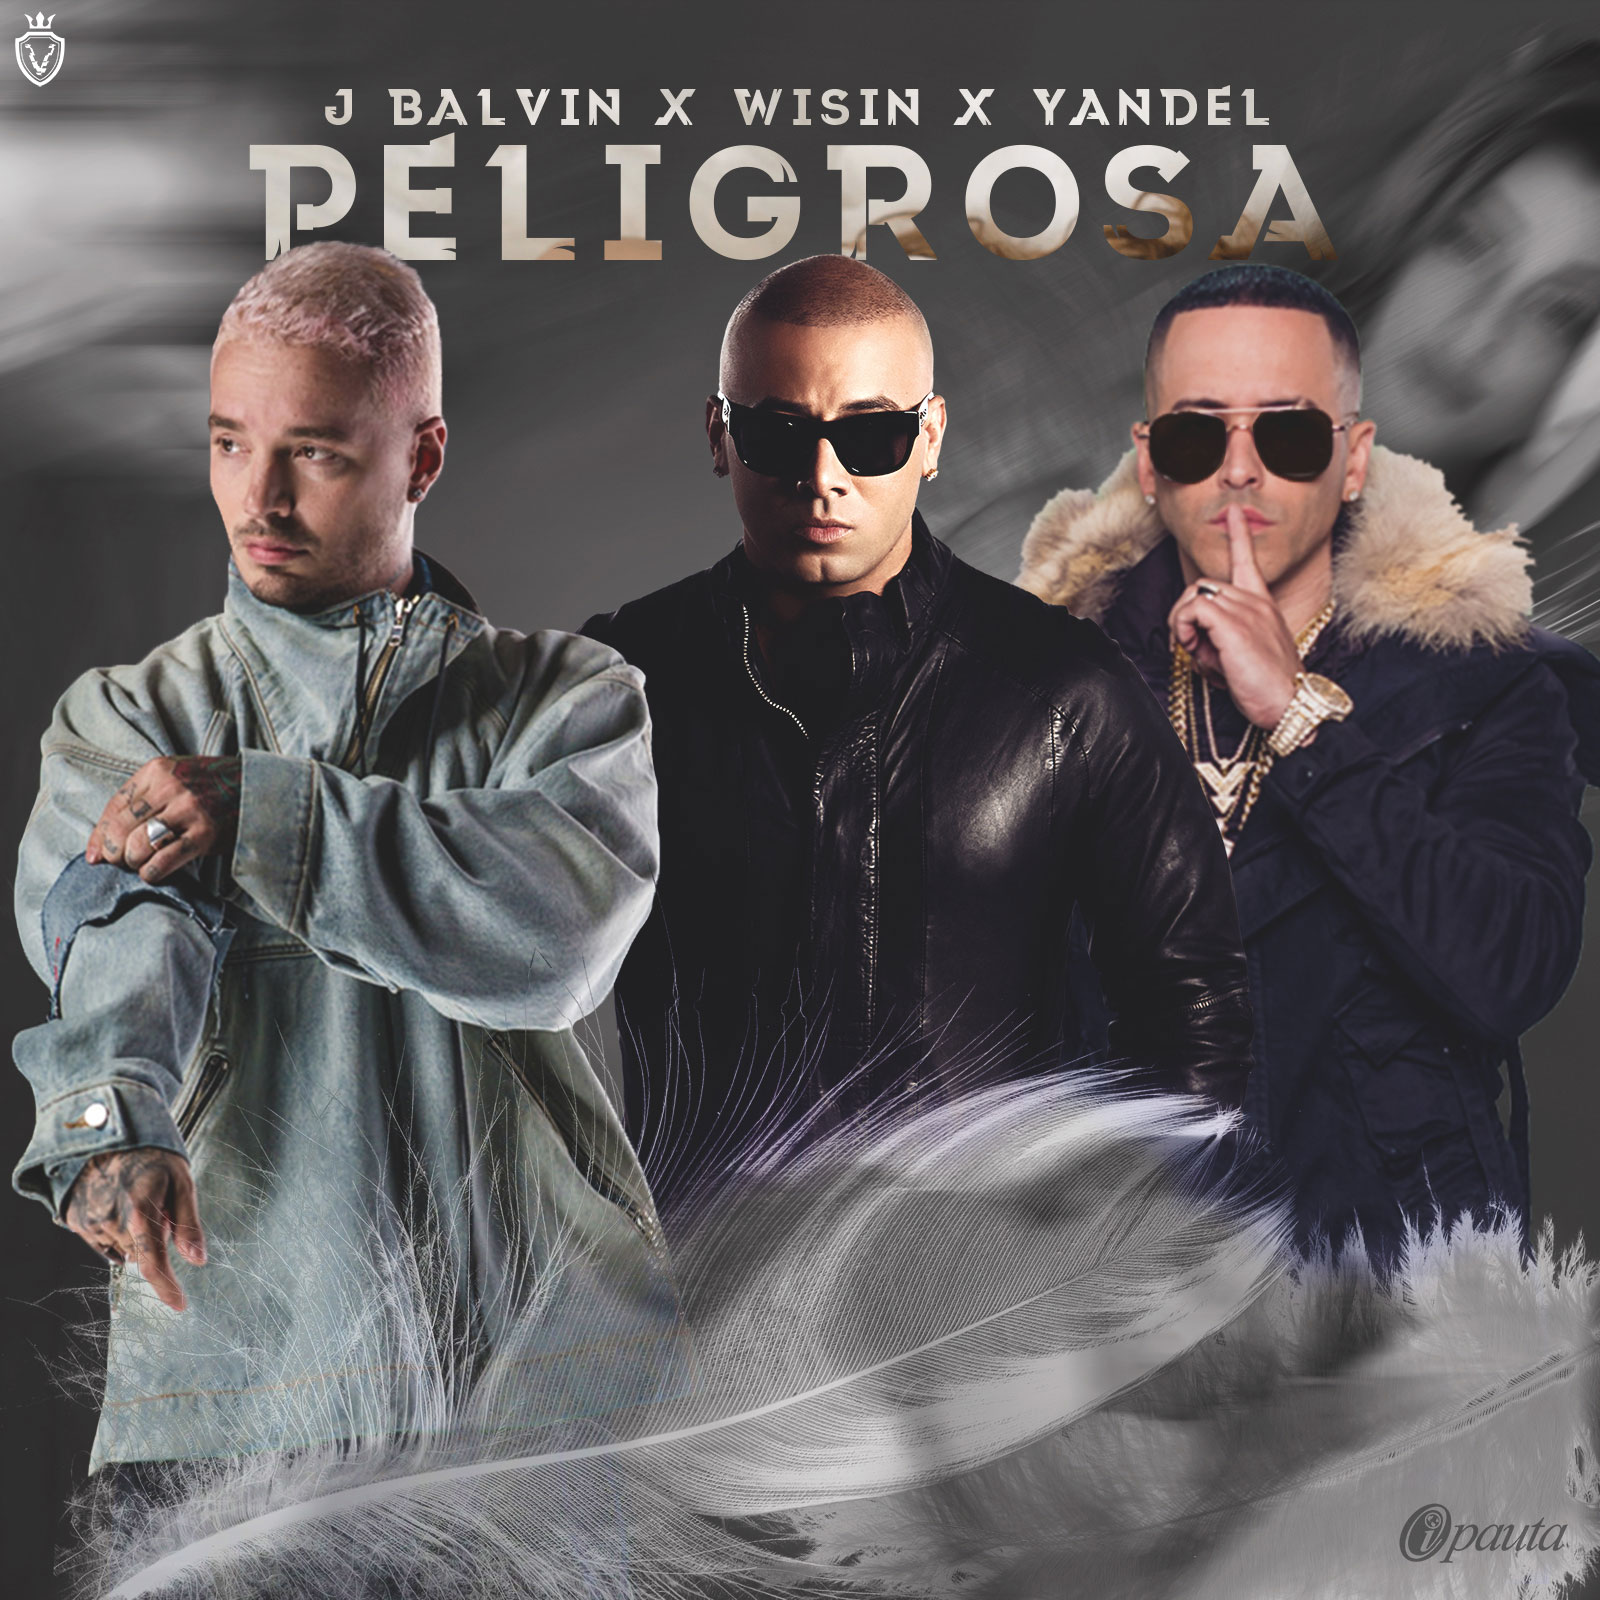  «Peligrosa», el nuevo tema de J Balvin, Wisin y Yandel (+Audio)